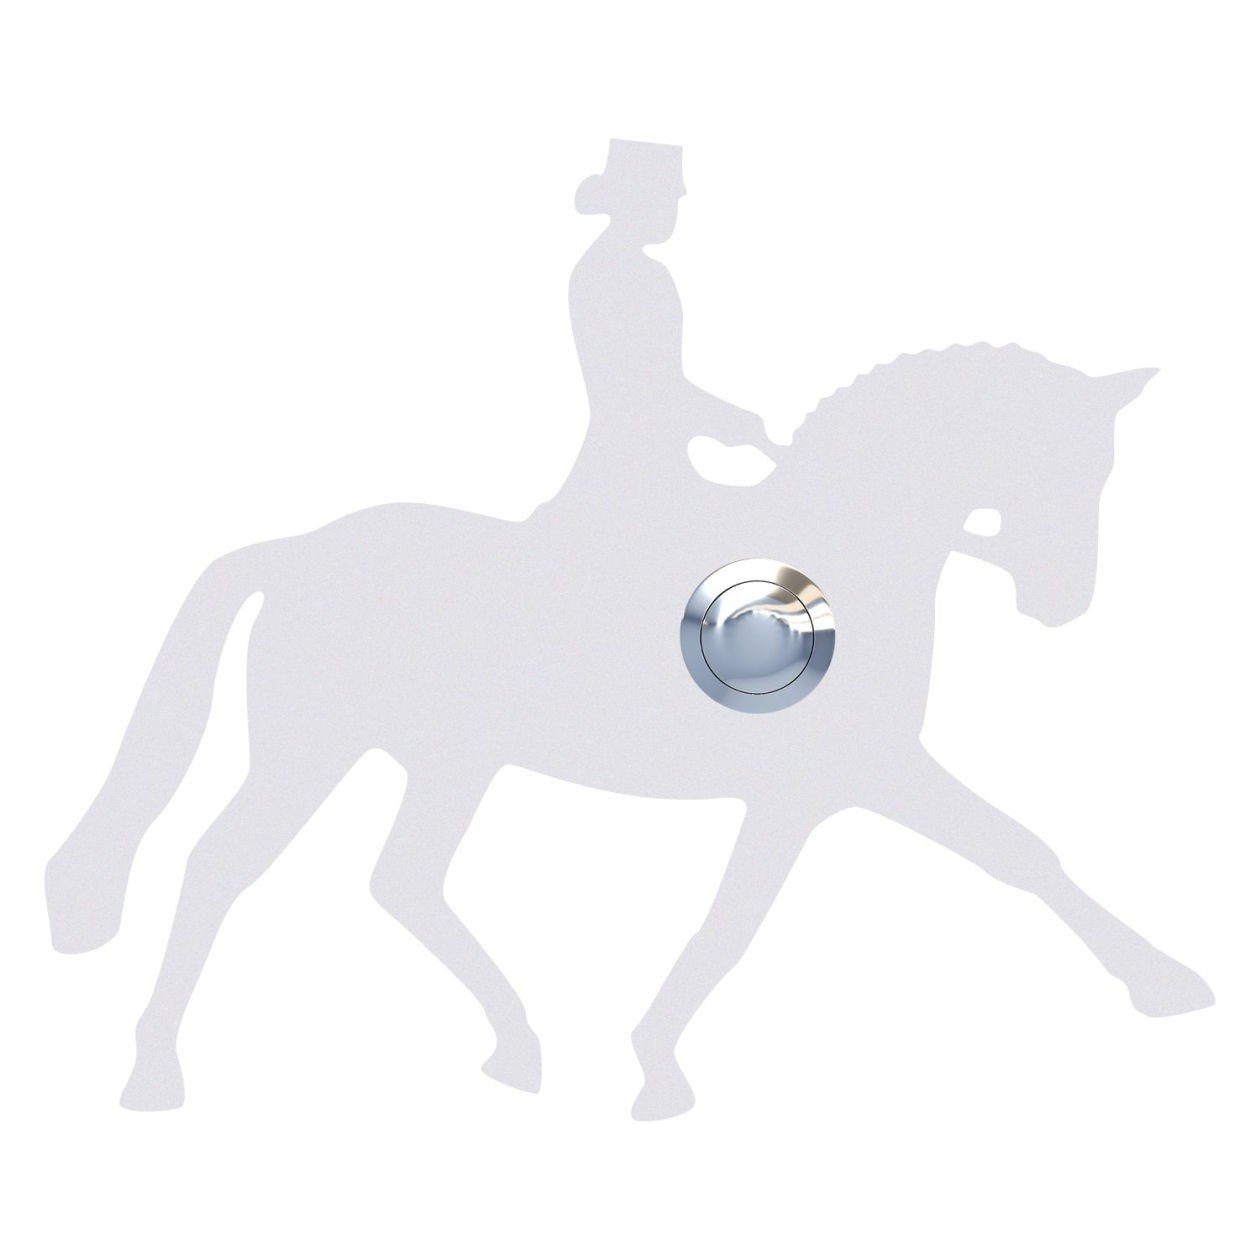 Bravios Briefkasten Klingeltaster Weiß Dressurpferd